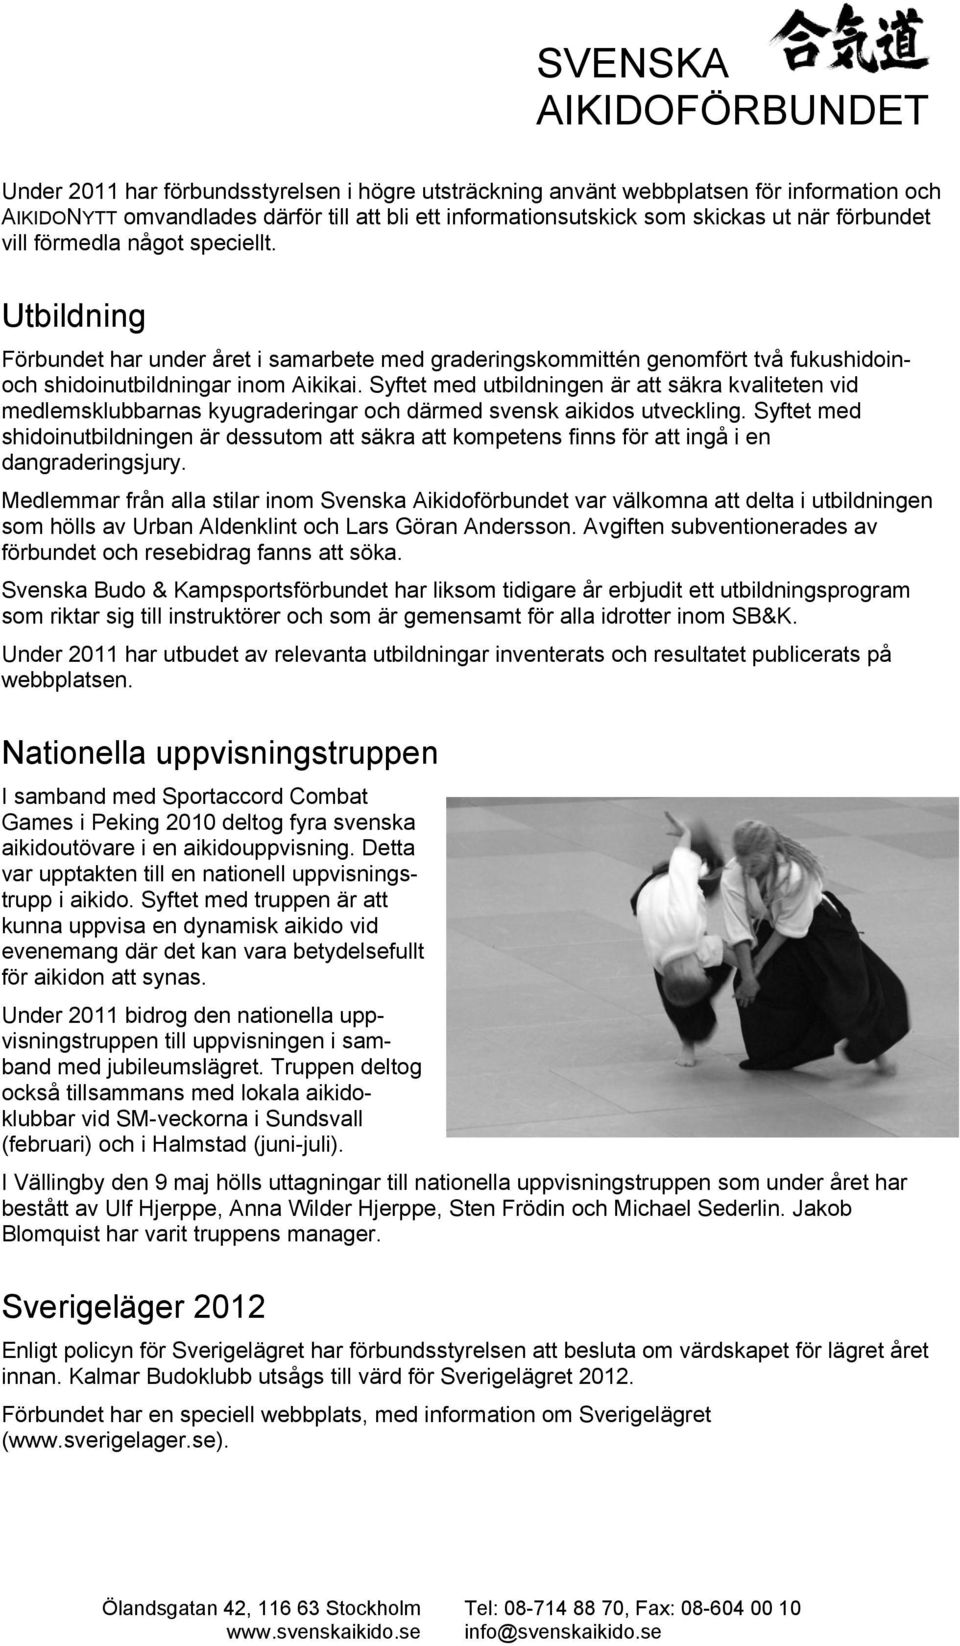 Syftet med utbildningen är att säkra kvaliteten vid medlemsklubbarnas kyugraderingar och därmed svensk aikidos utveckling.